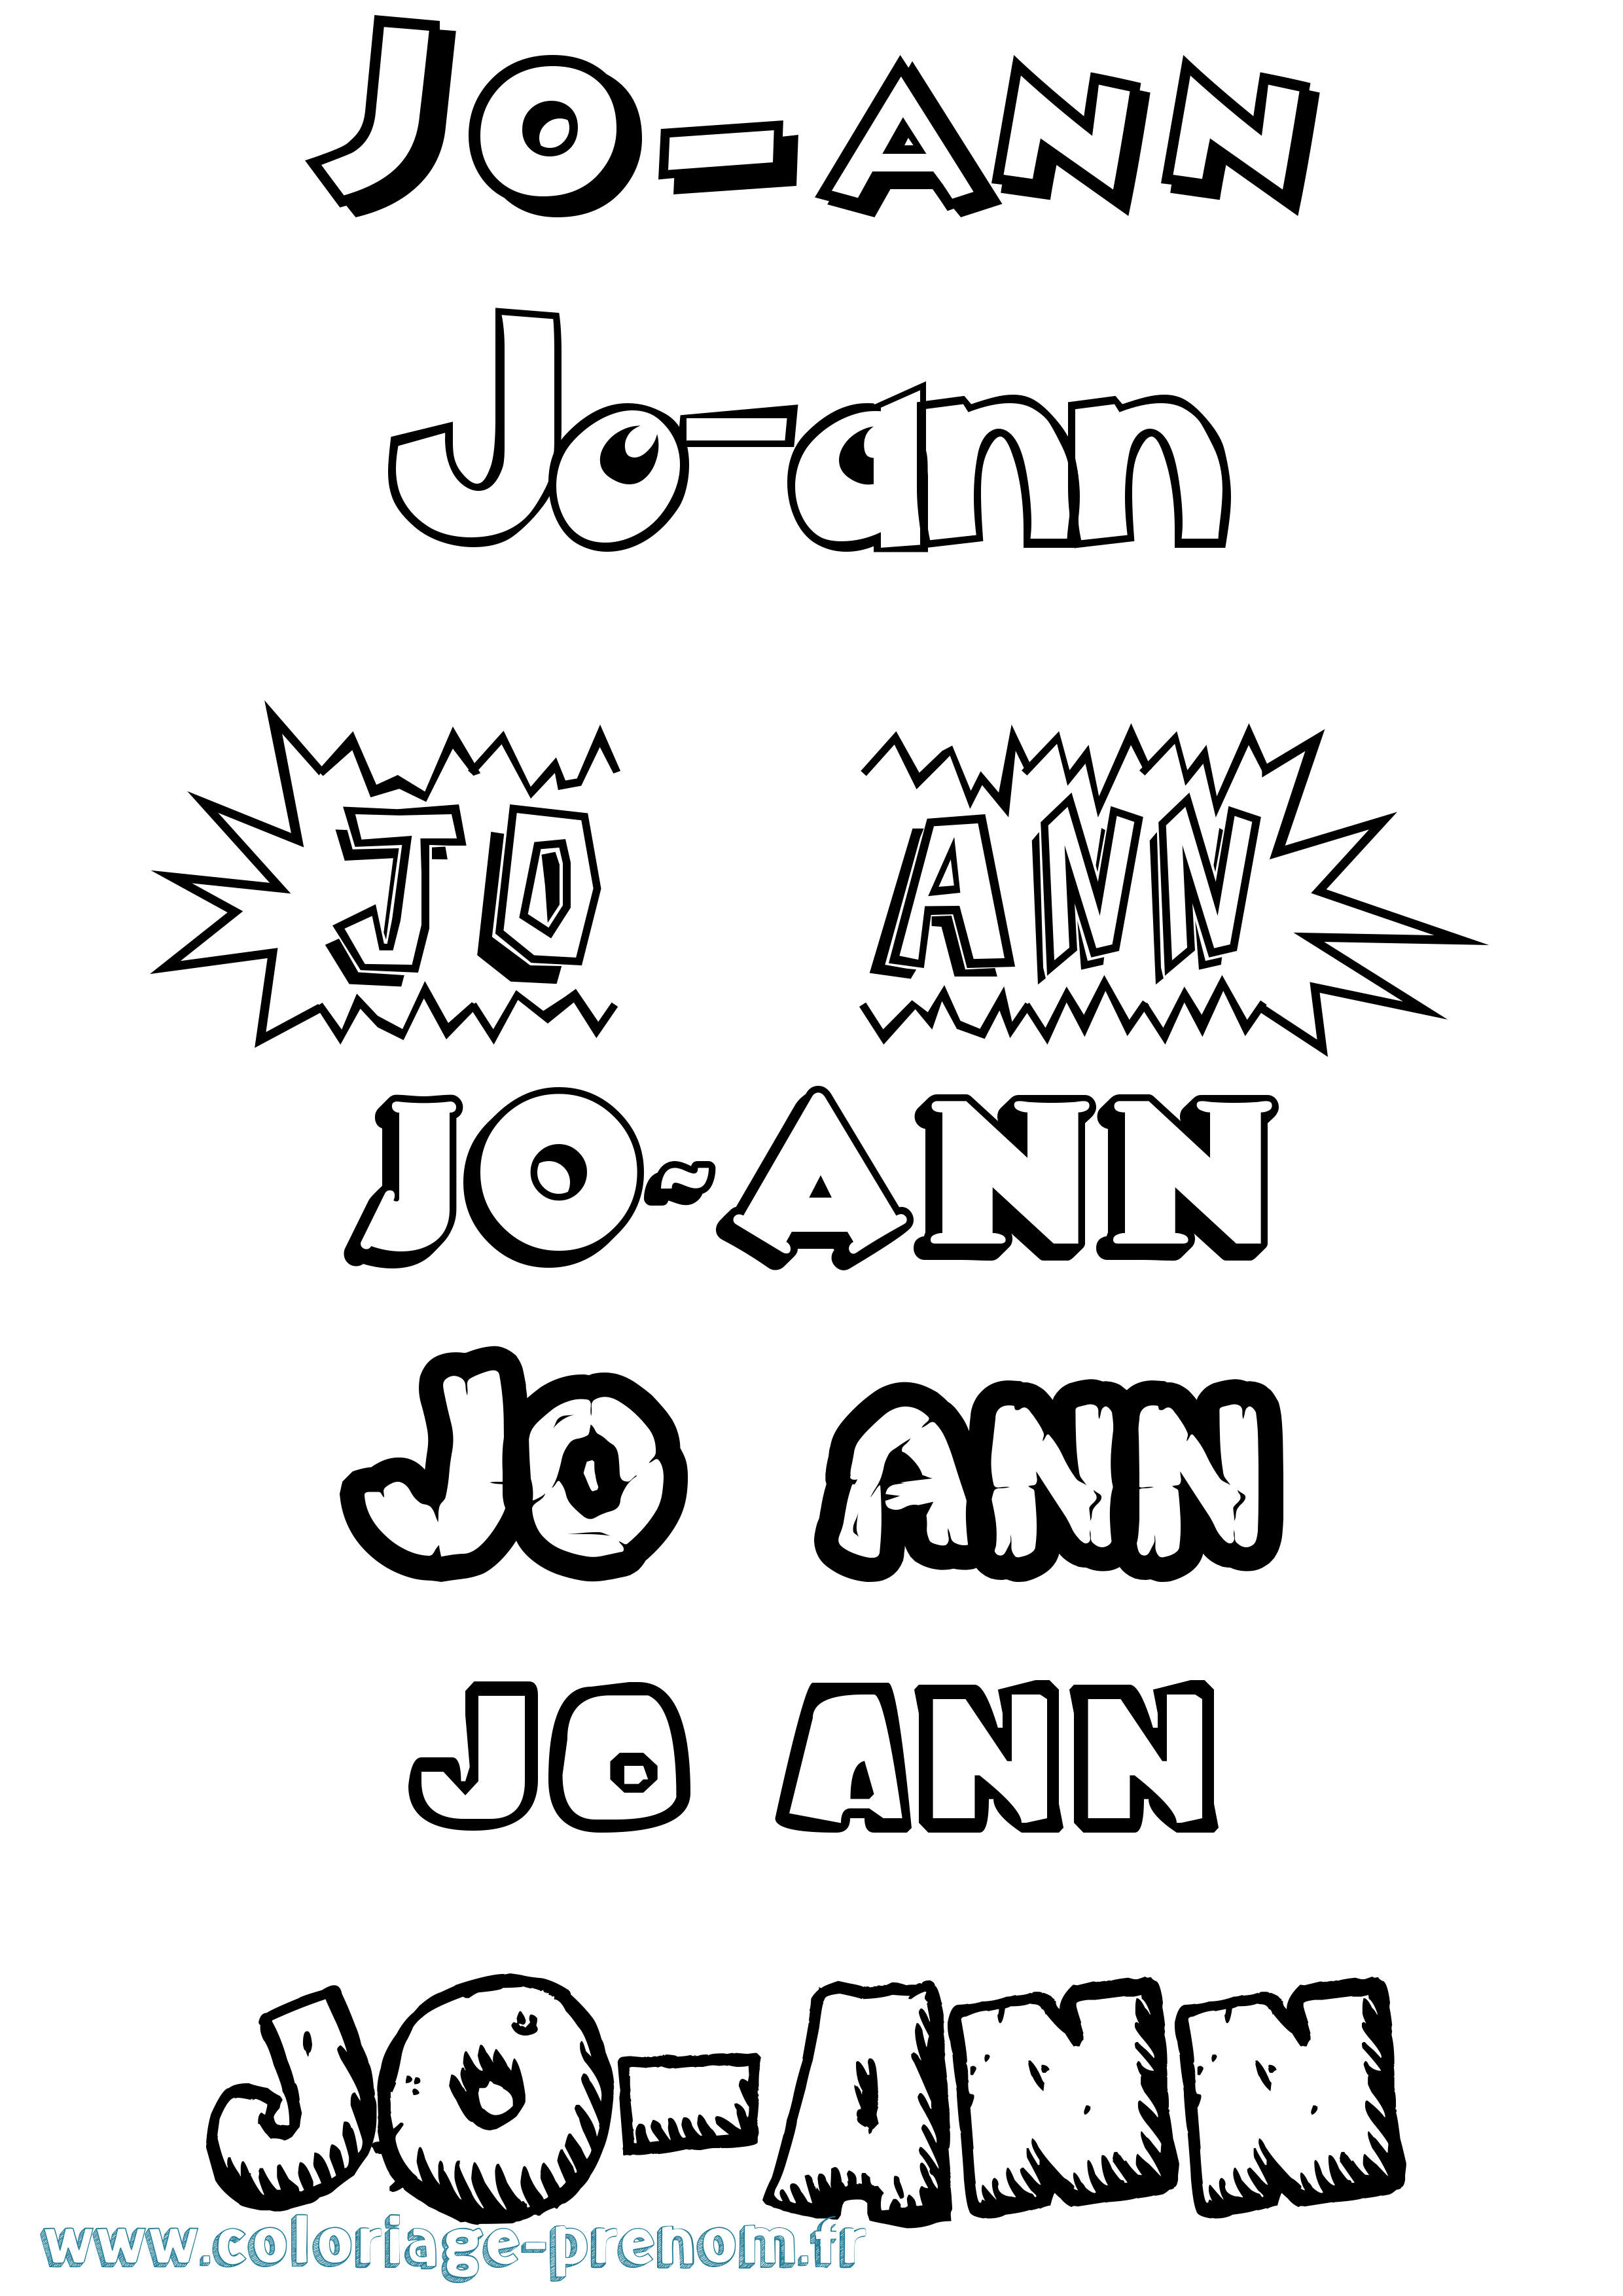 Coloriage prénom Jo-Ann Dessin Animé